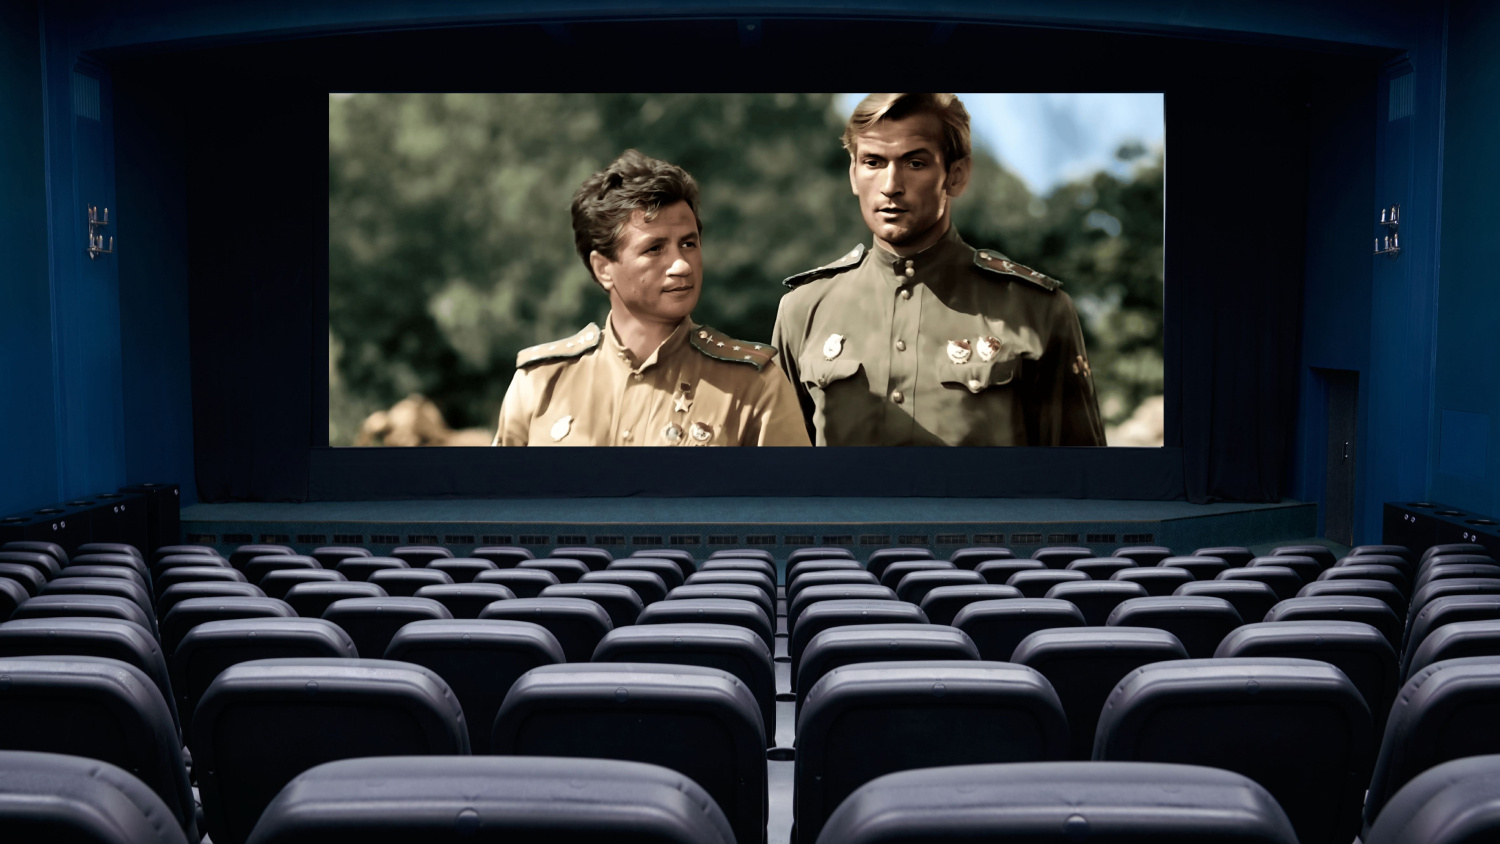 «Максима Перепелицу» не узнаете? Попробуйте угадать советский фильм о войне по одному кадру